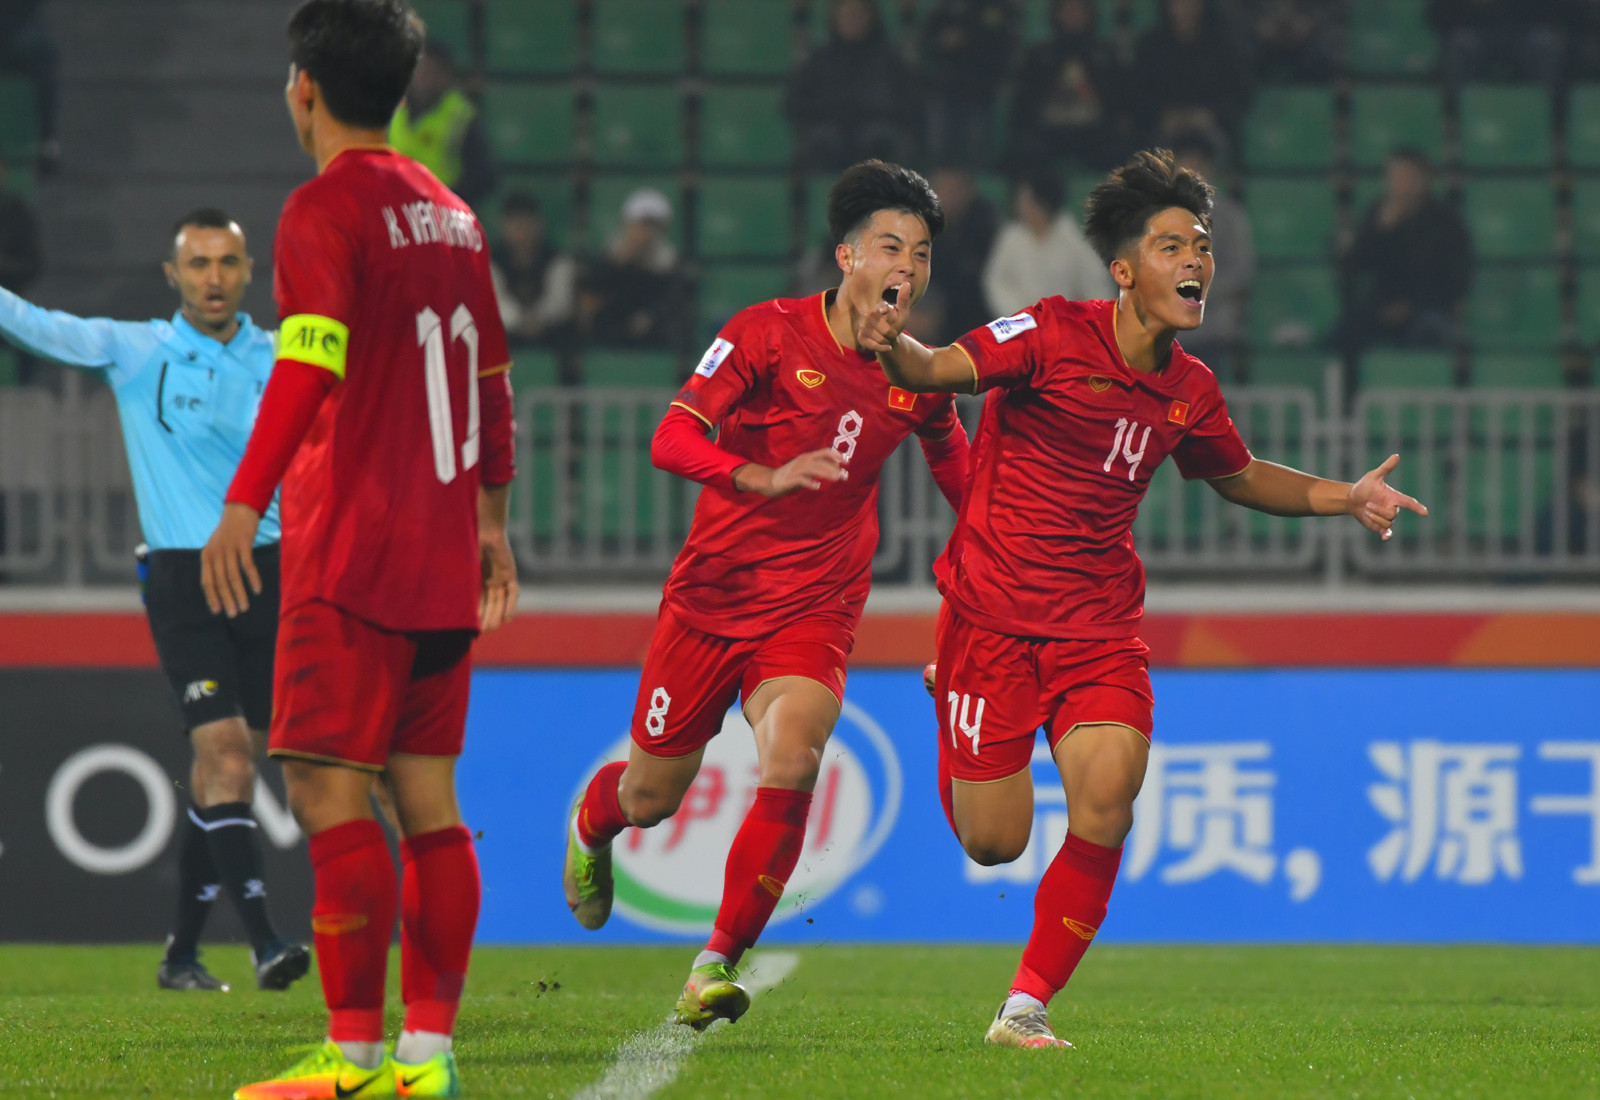 U20 Việt Nam thắng U20 Qatar, HLV Troussier nhận được “lời tư vấn” - Ảnh 1.